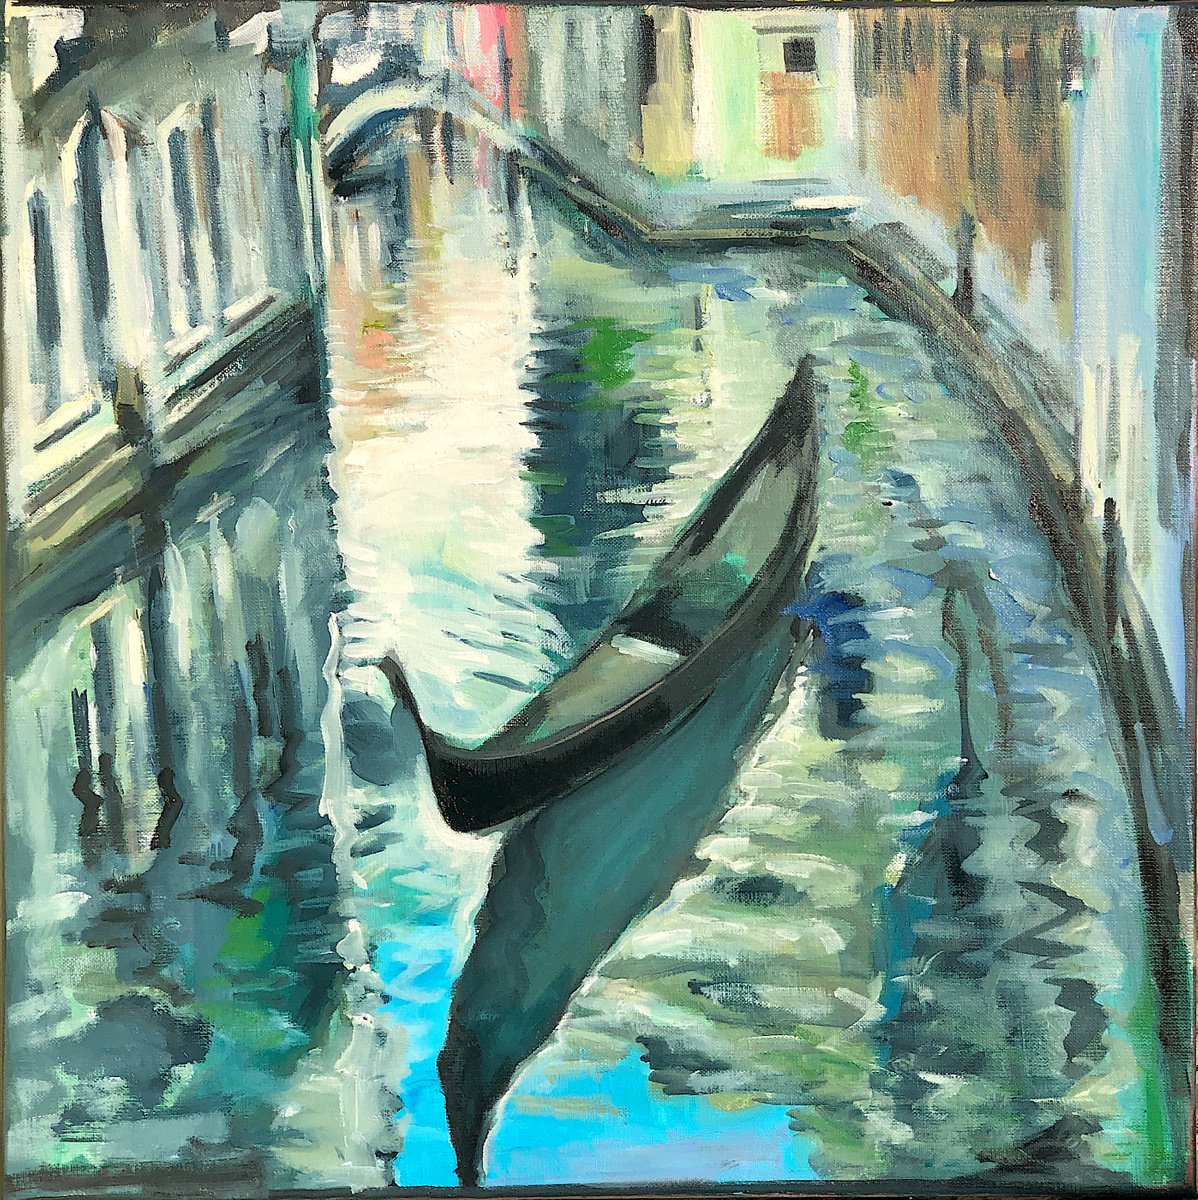 Lost in Venice by Arun Prem